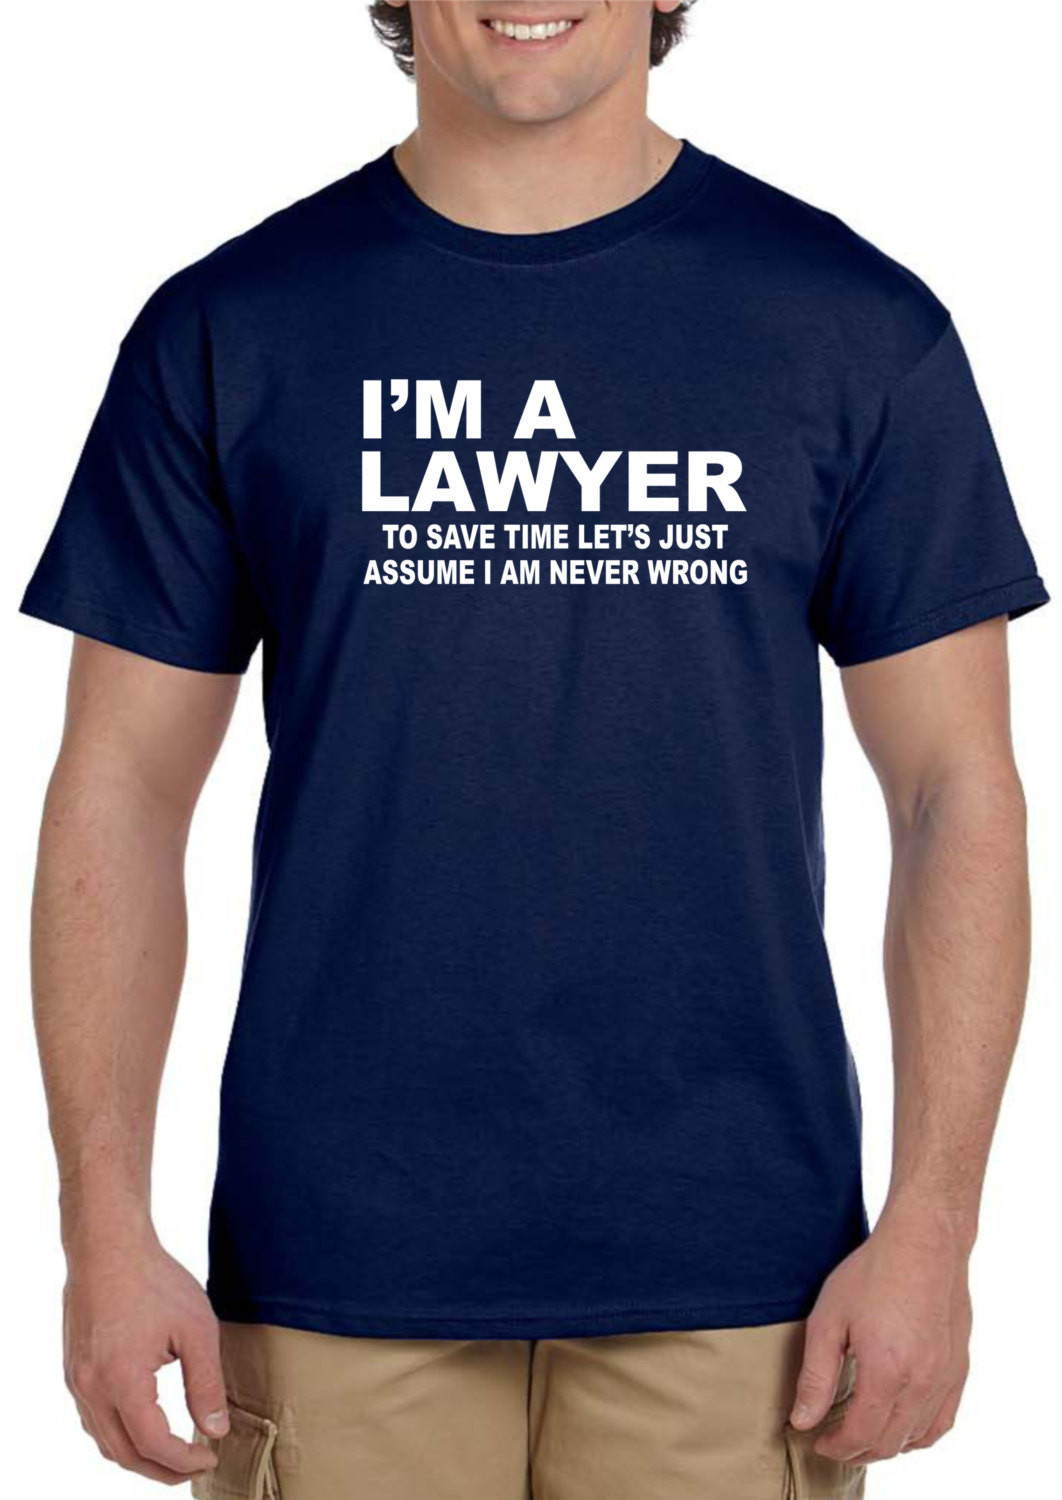 Geschenke Für Juristen
 Rechtsanwalt Geschenke für Juristen lustige Anwalt